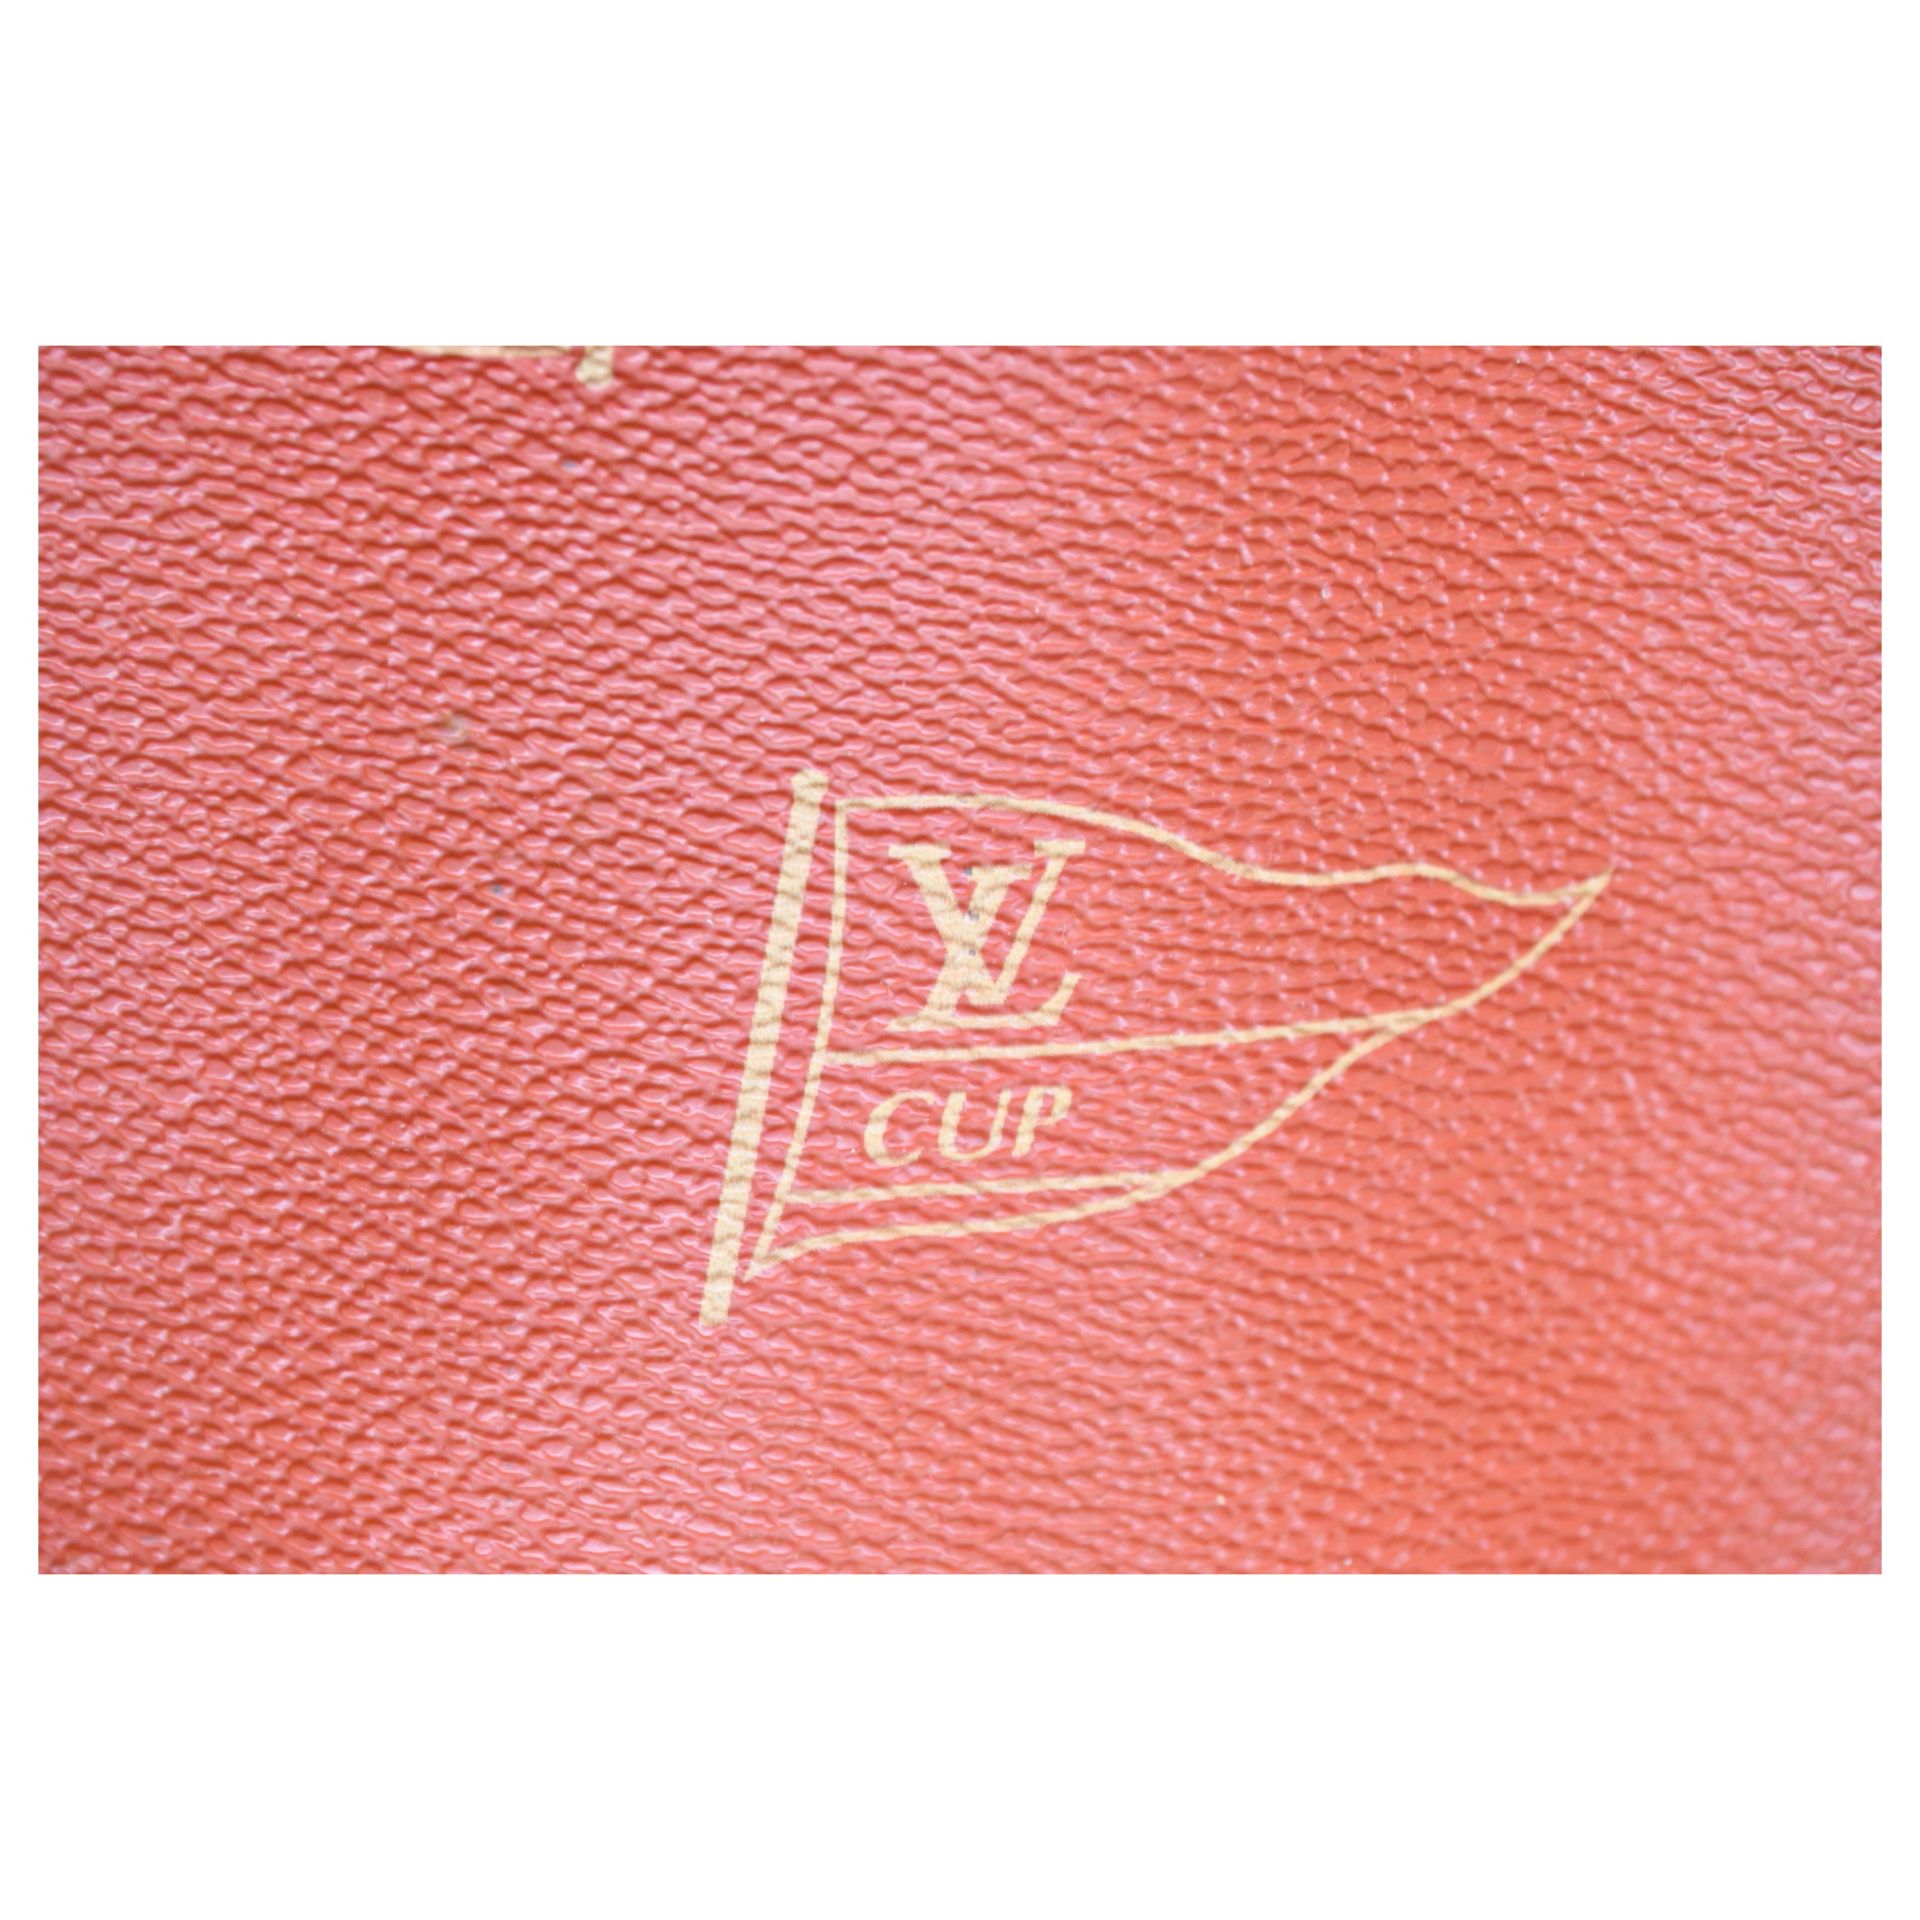 Rare Authentic Vintage Louis Vuitton garment bag, from the 1995 America's Cup, excellent condition. - Bild 2 aus 9